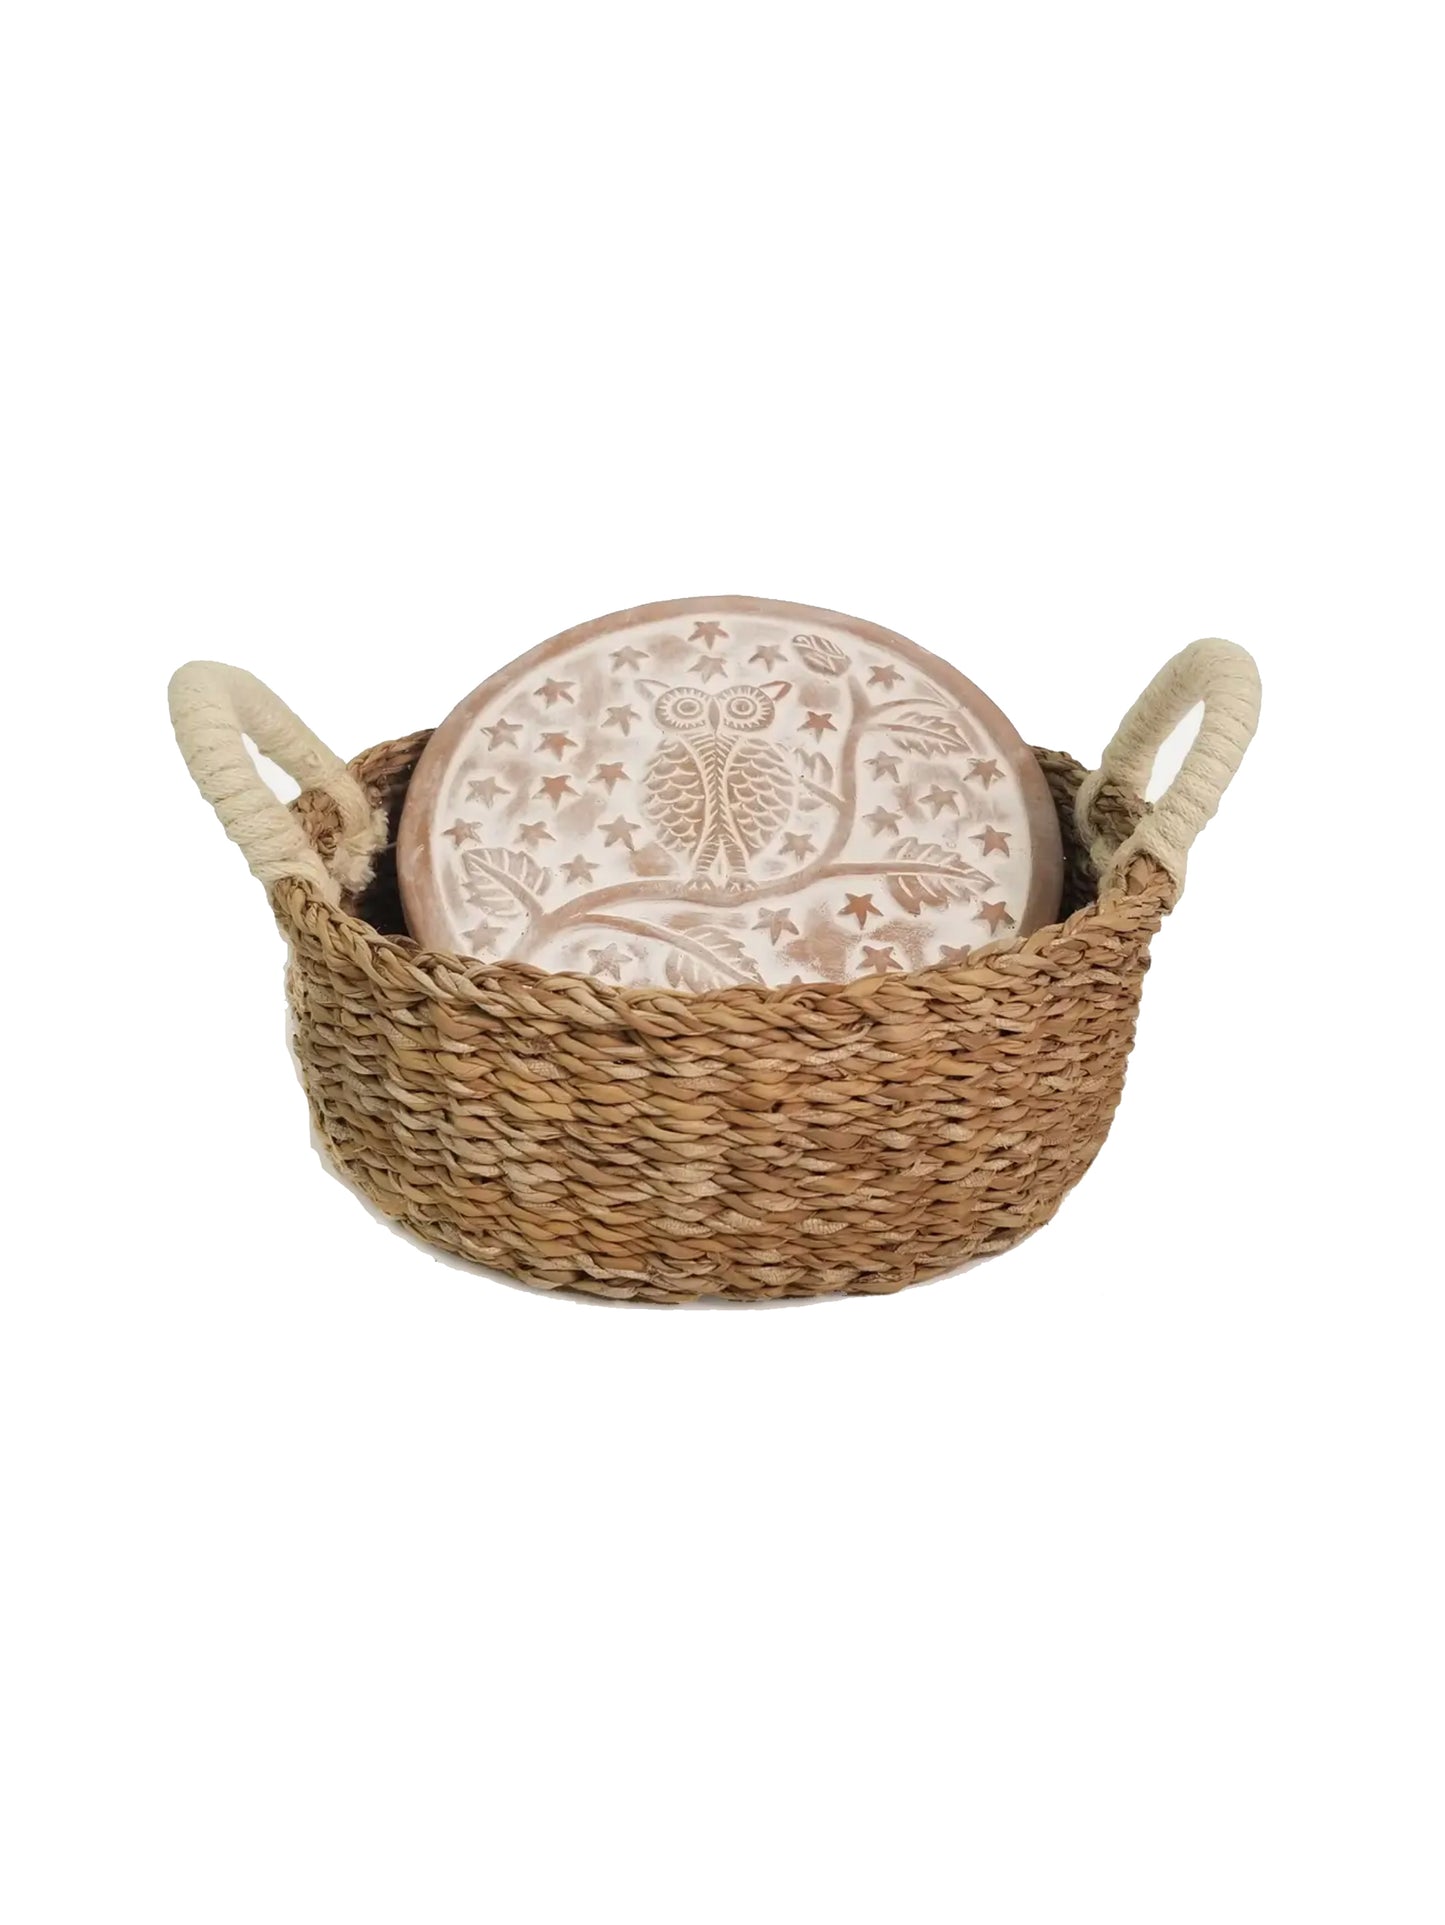 Bread Warmer and Wicker Basket